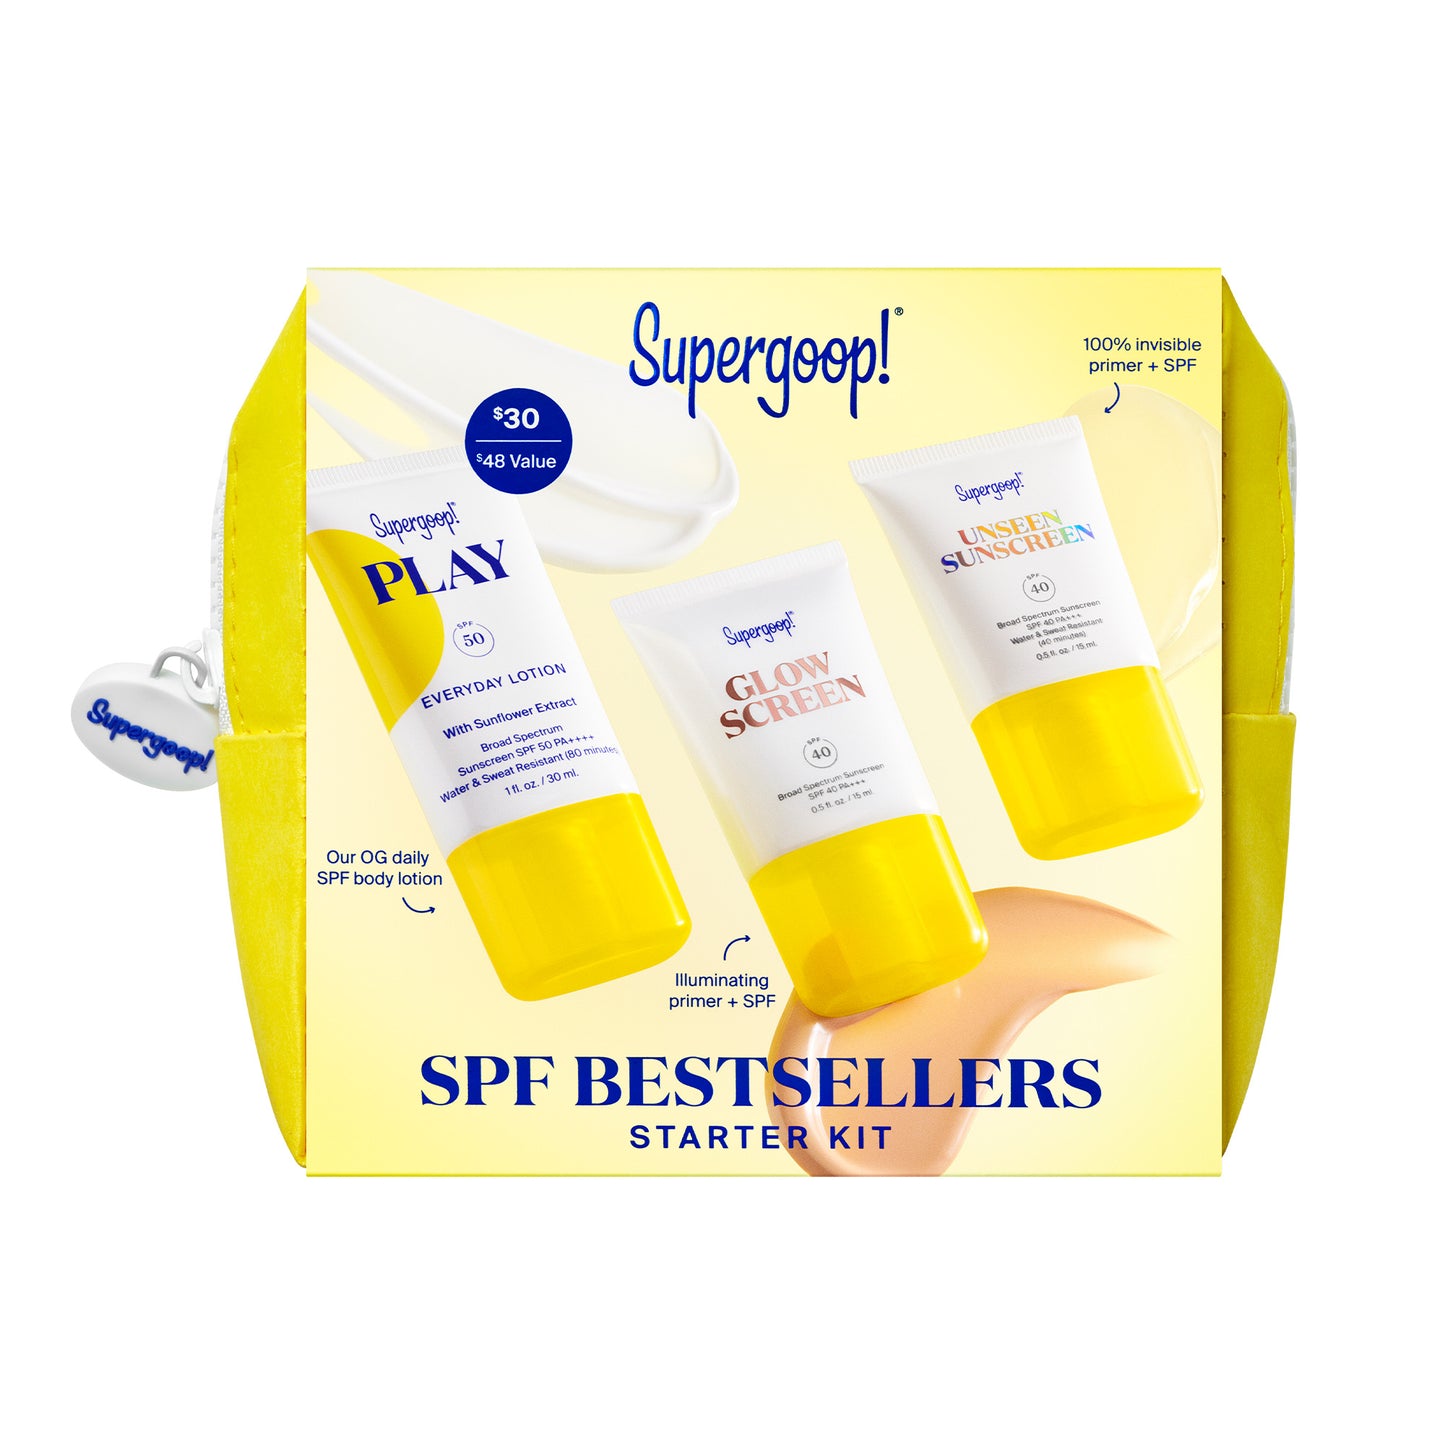 Supergoop! | SPF Bestsellers Kit